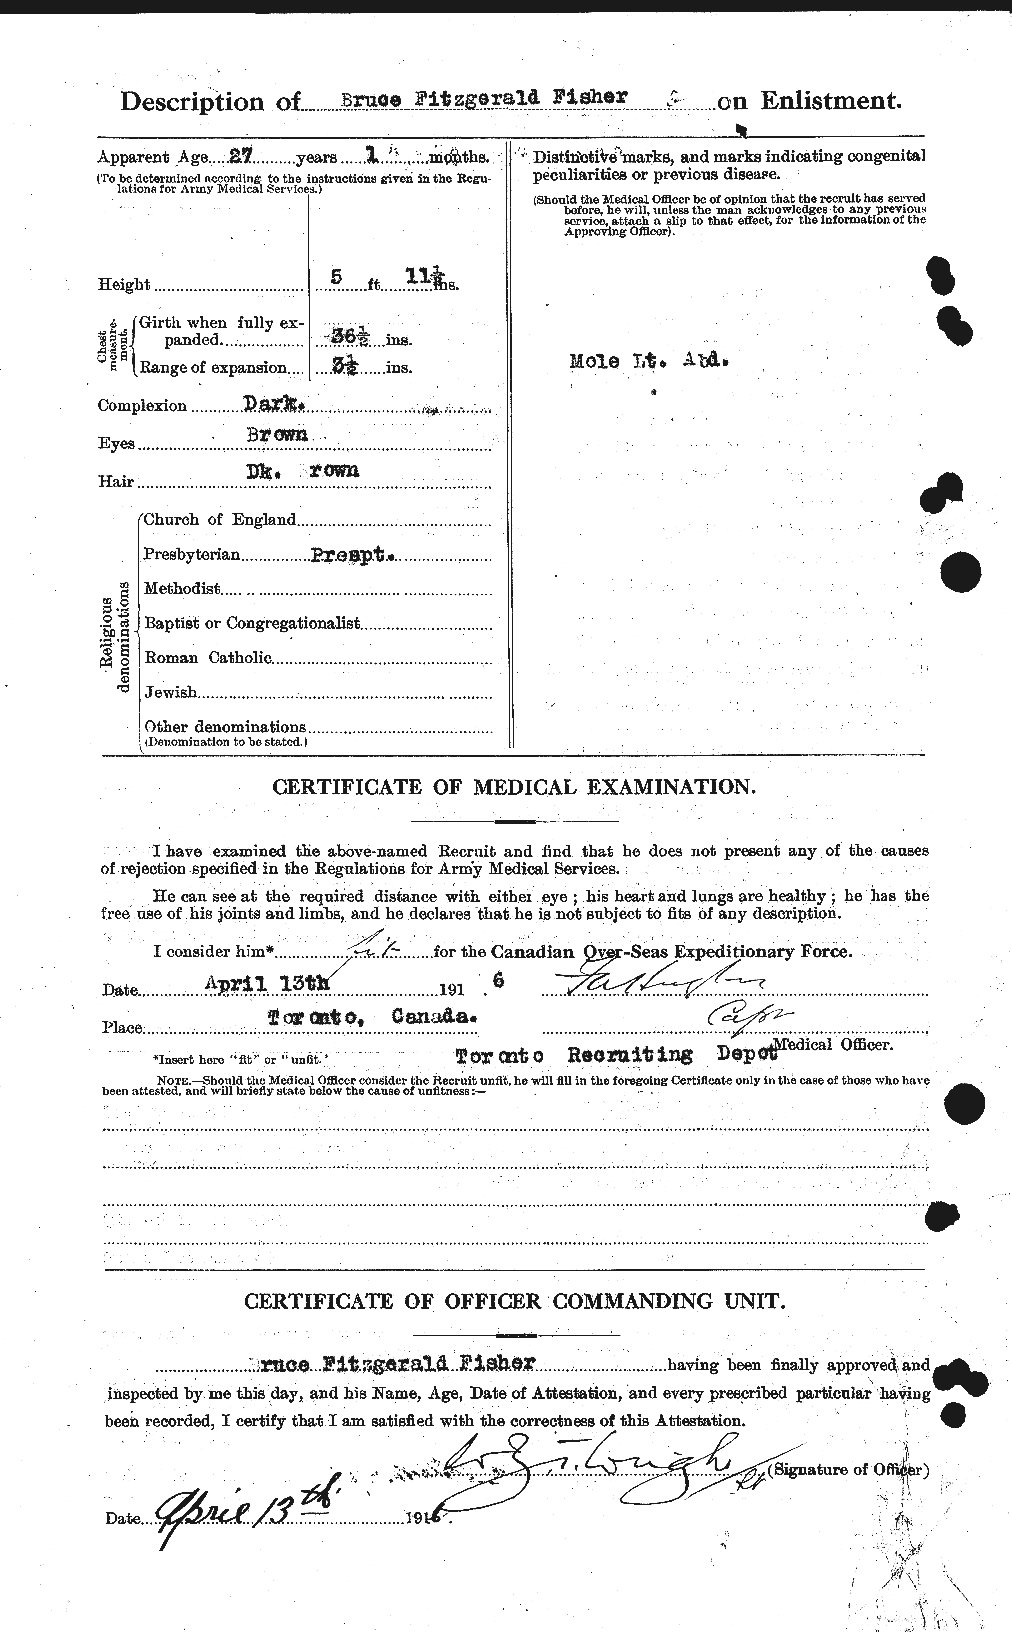 Dossiers du Personnel de la Première Guerre mondiale - CEC 325295b